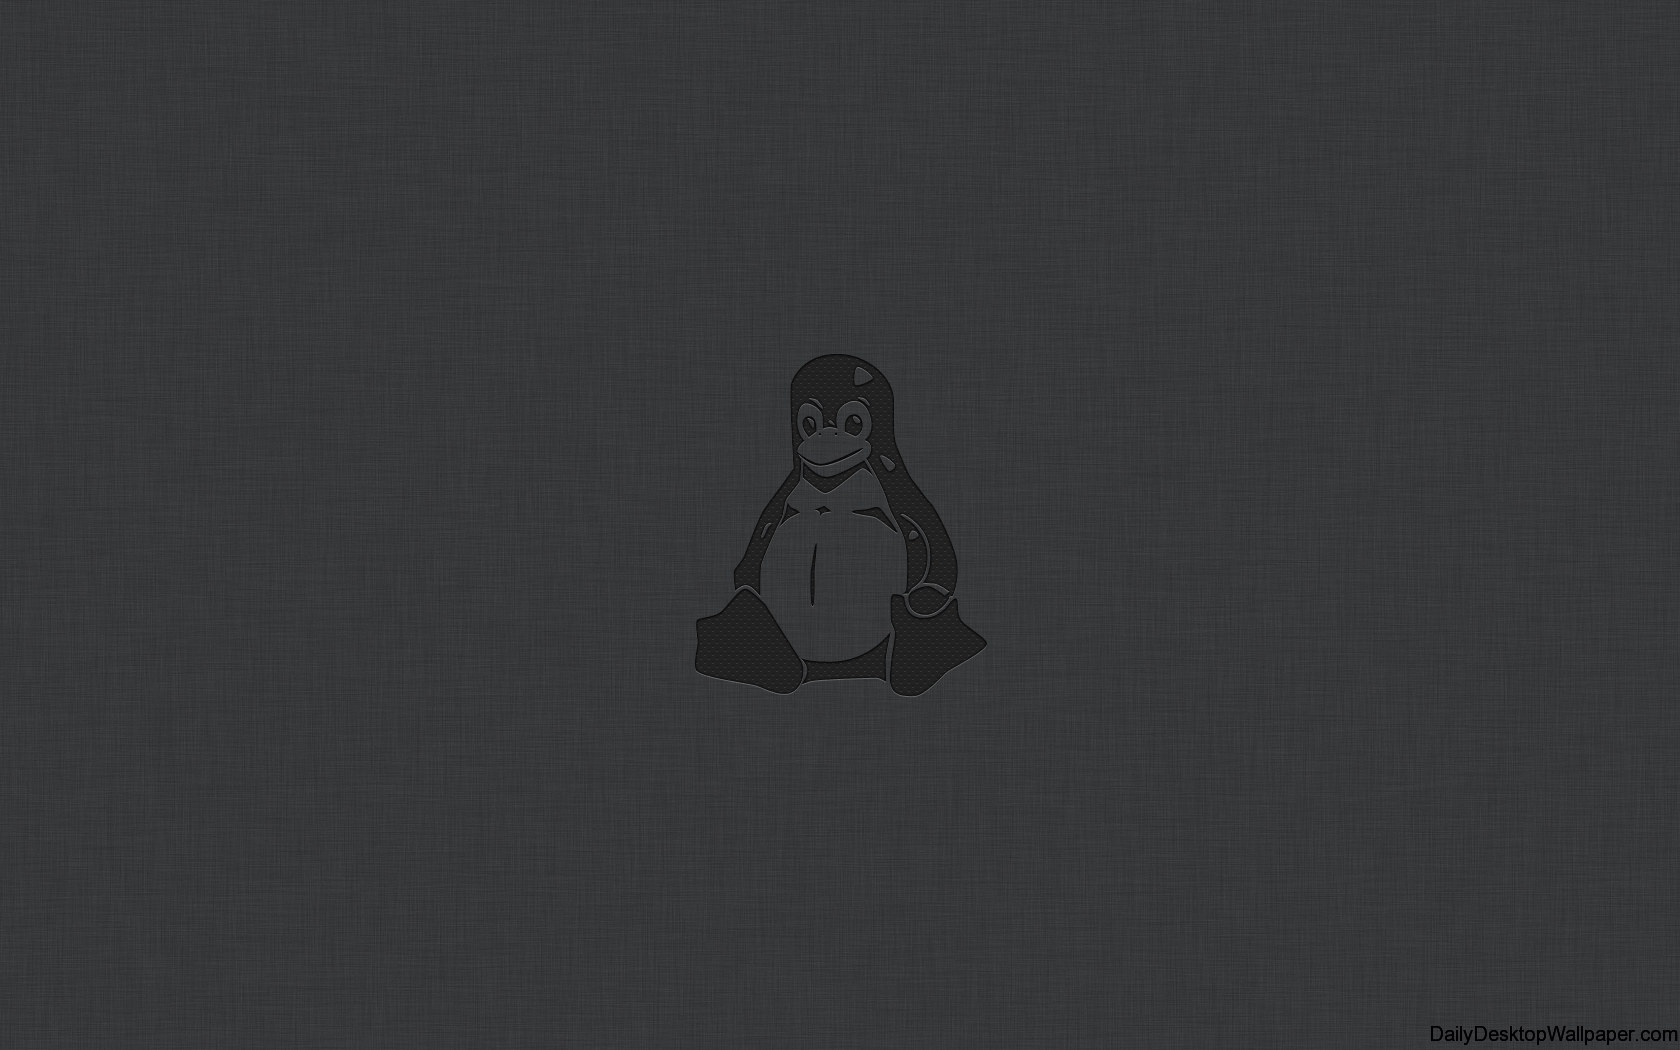 Minimalist Dark Linux Wallpaper